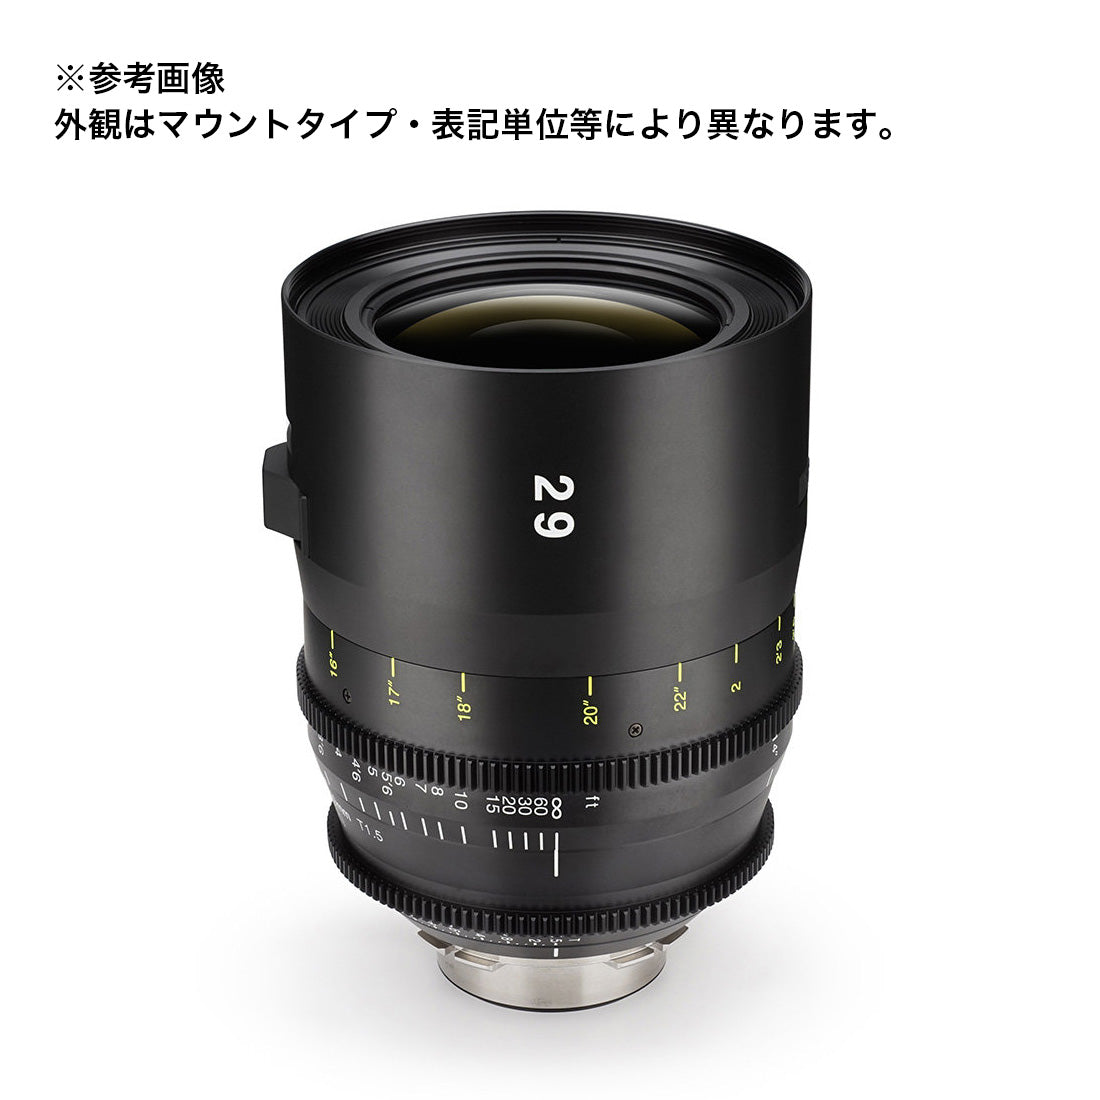 Tokina(トキナー) シネマプライムレンズ VISTA 29mm T1.5 CINEMA LENS PLマウント メートル表記 [264247]